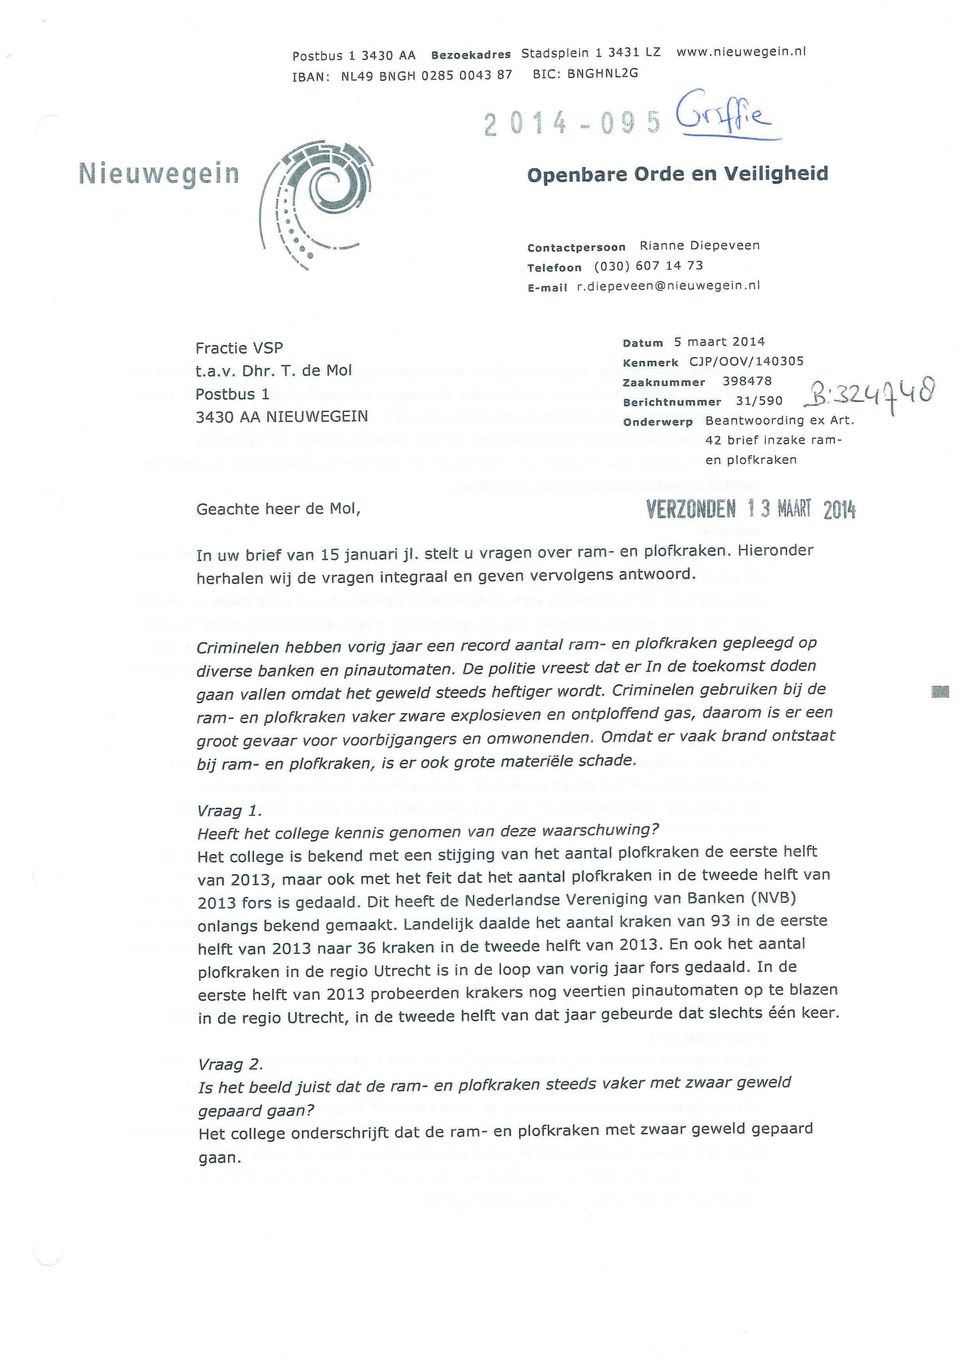 lefoon (030) 607 1473 E-mail r.diepeveen@nieuwegein.nl Fractie VSP t.a.v. Dhr. T.